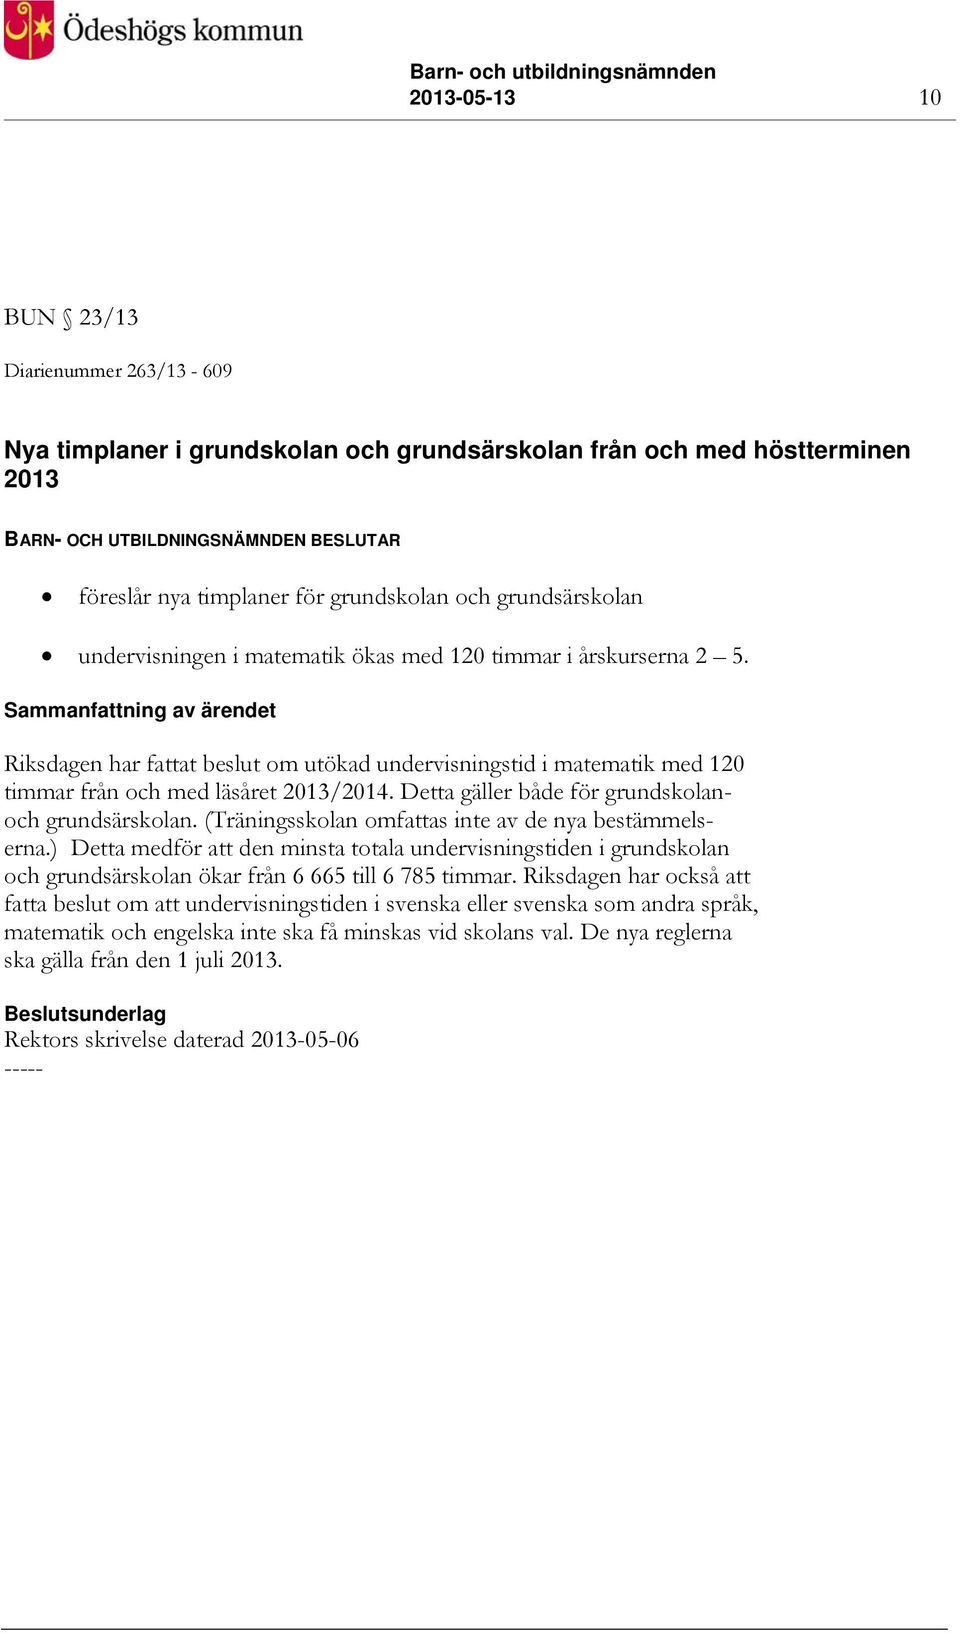 Sammanfattning av ärendet Riksdagen har fattat beslut om utökad undervisningstid i matematik med 120 timmar från och med läsåret 2013/2014. Detta gäller både för grundskolanoch grundsärskolan.